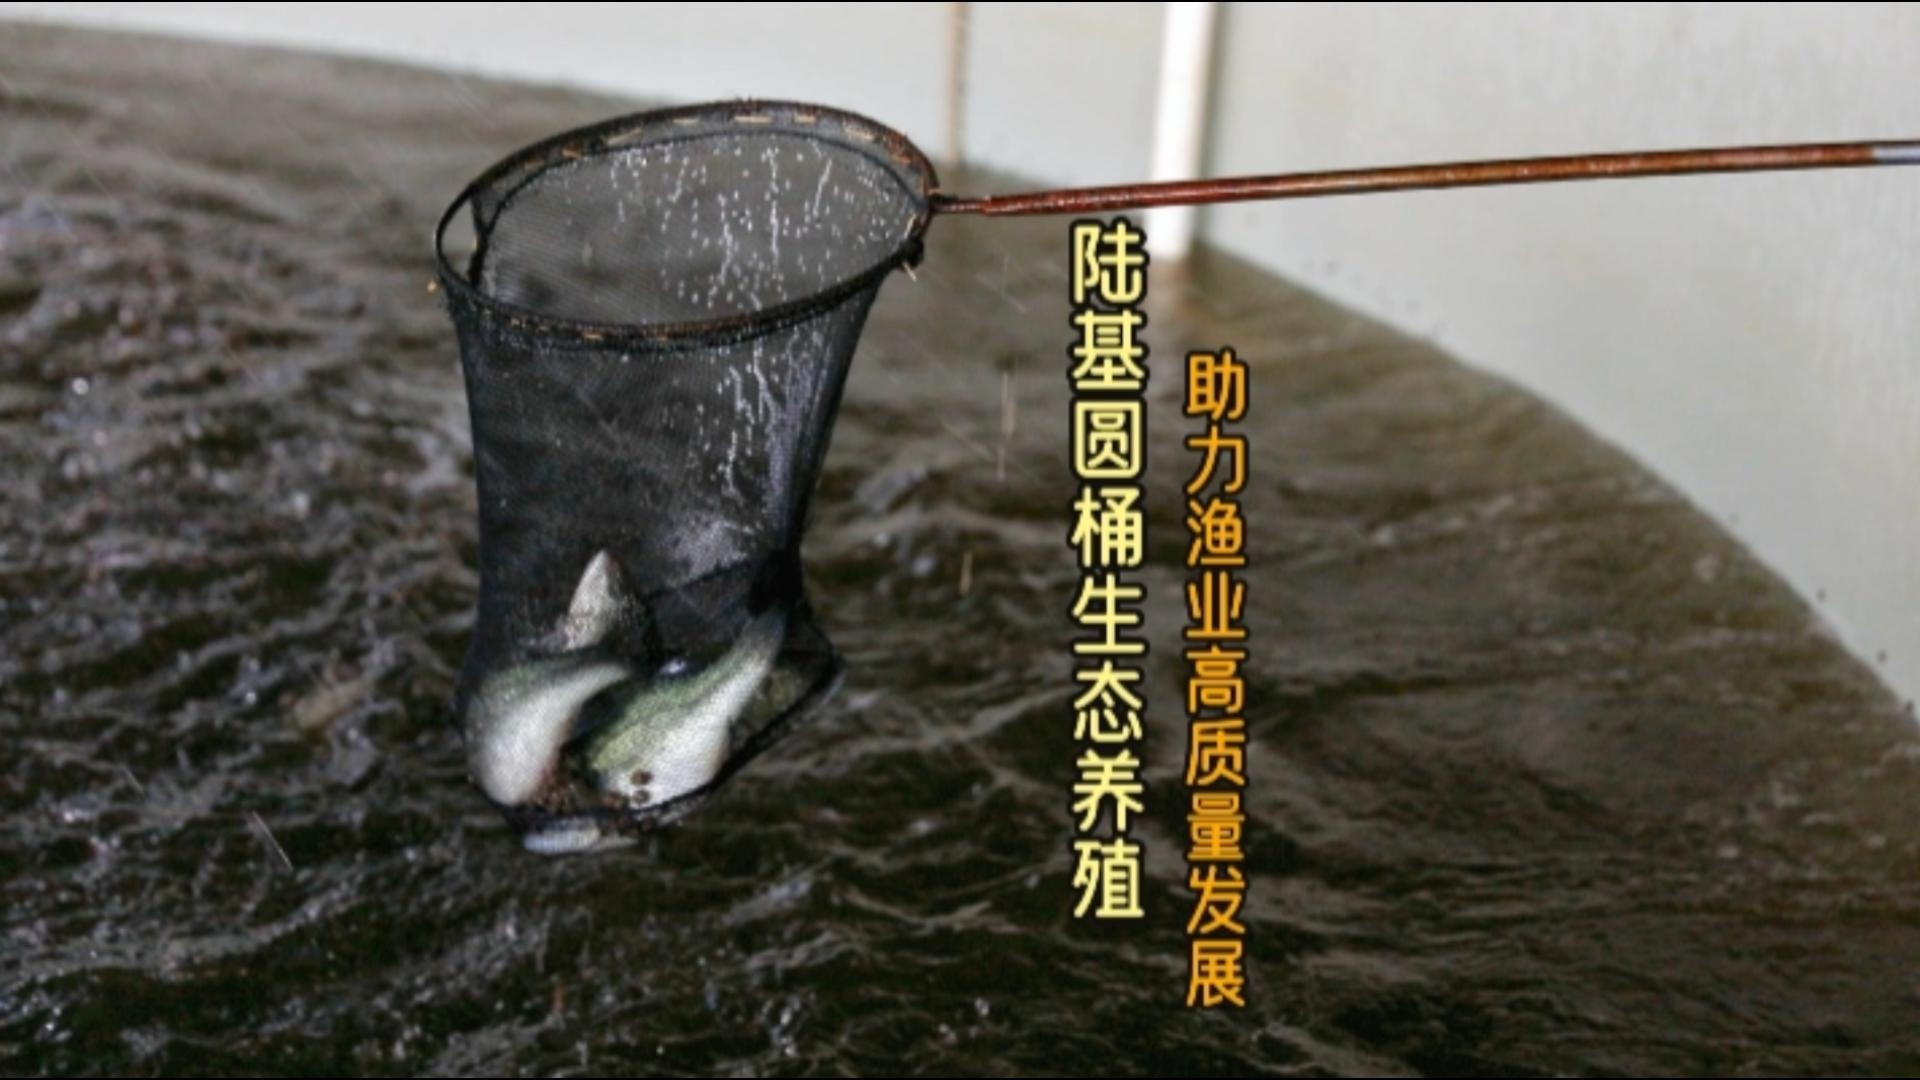 更济宁丨陆基圆桶生态养殖 助力渔业高质量发展